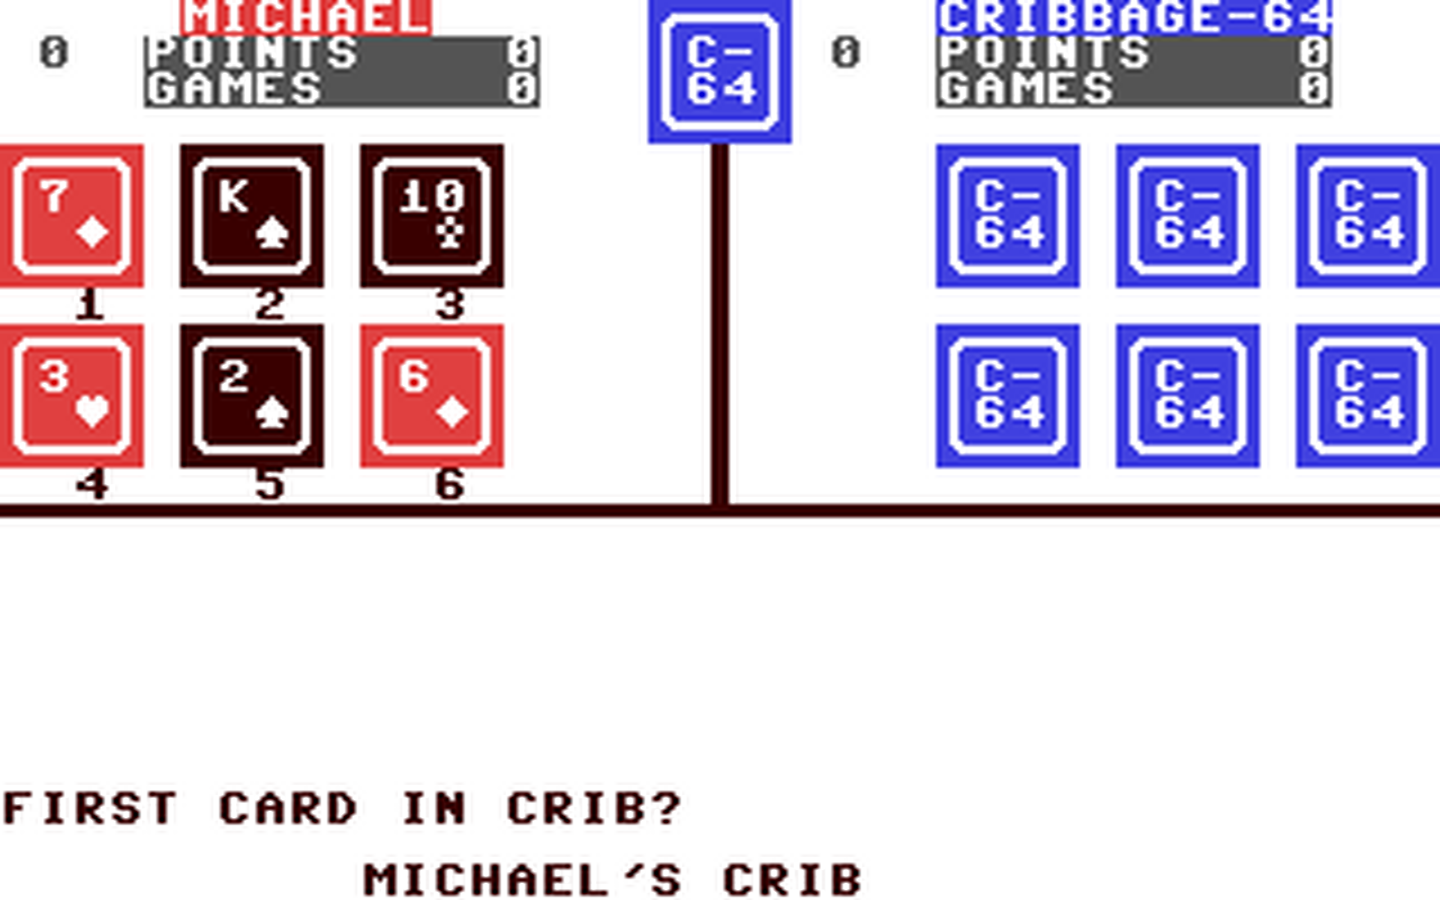 C64 GameBase Cribbage-64 (Not_Published)